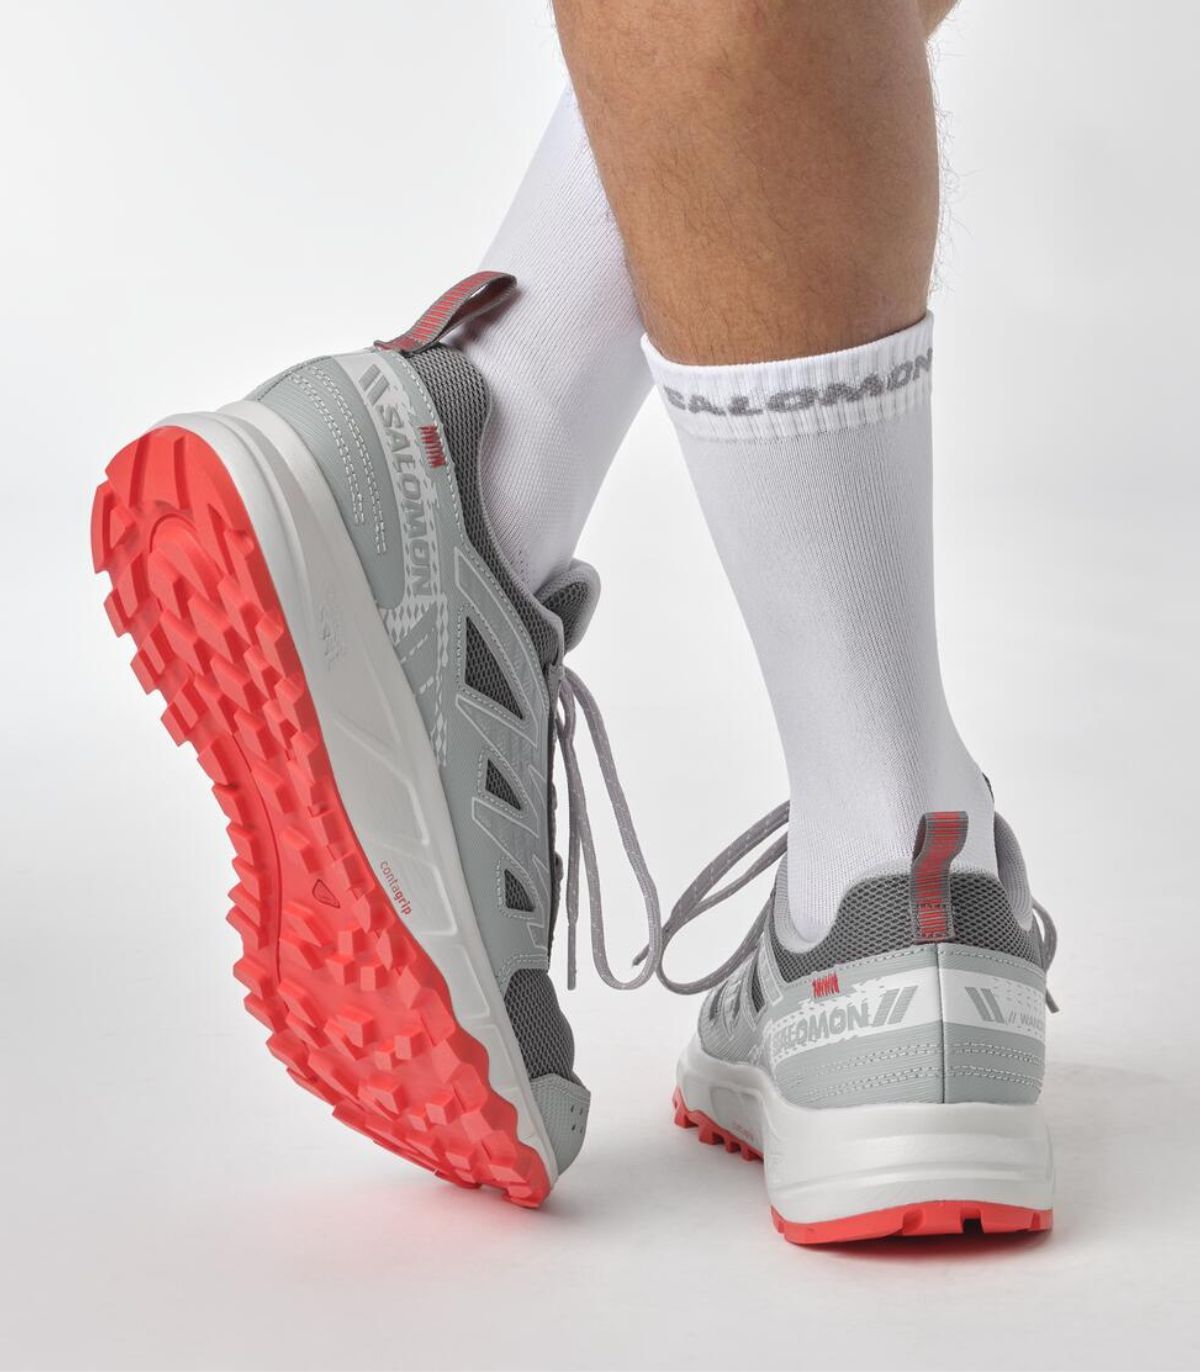 Zapatillas Running Salomon - Ofertas para comprar online y